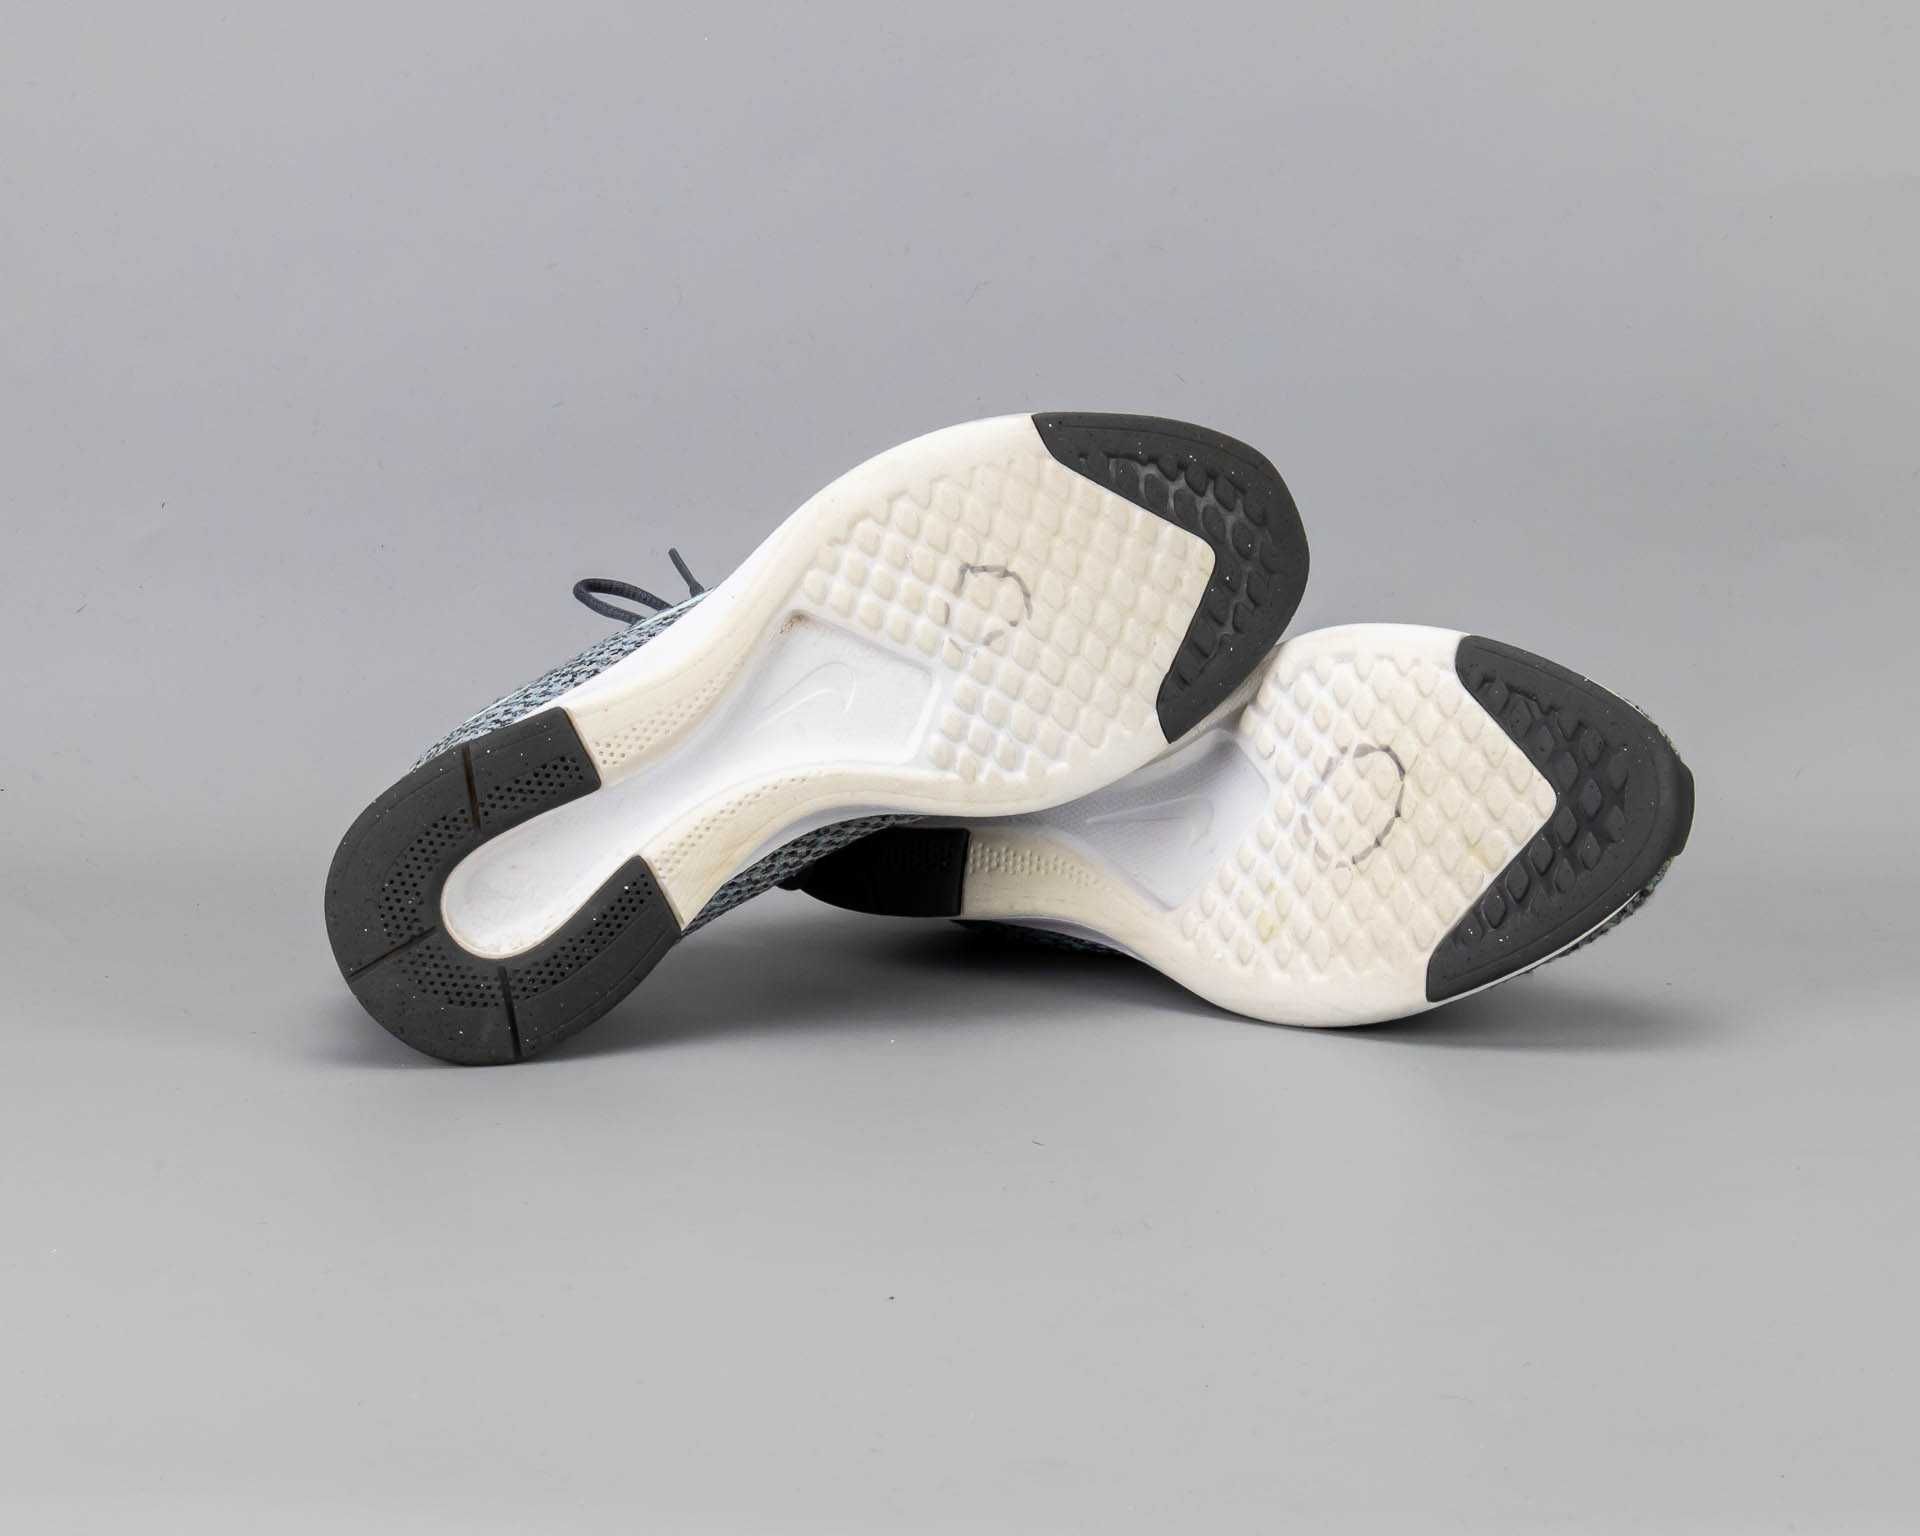 Легкие кроссовки в сетку Nike Dualtone Racer.38 размер